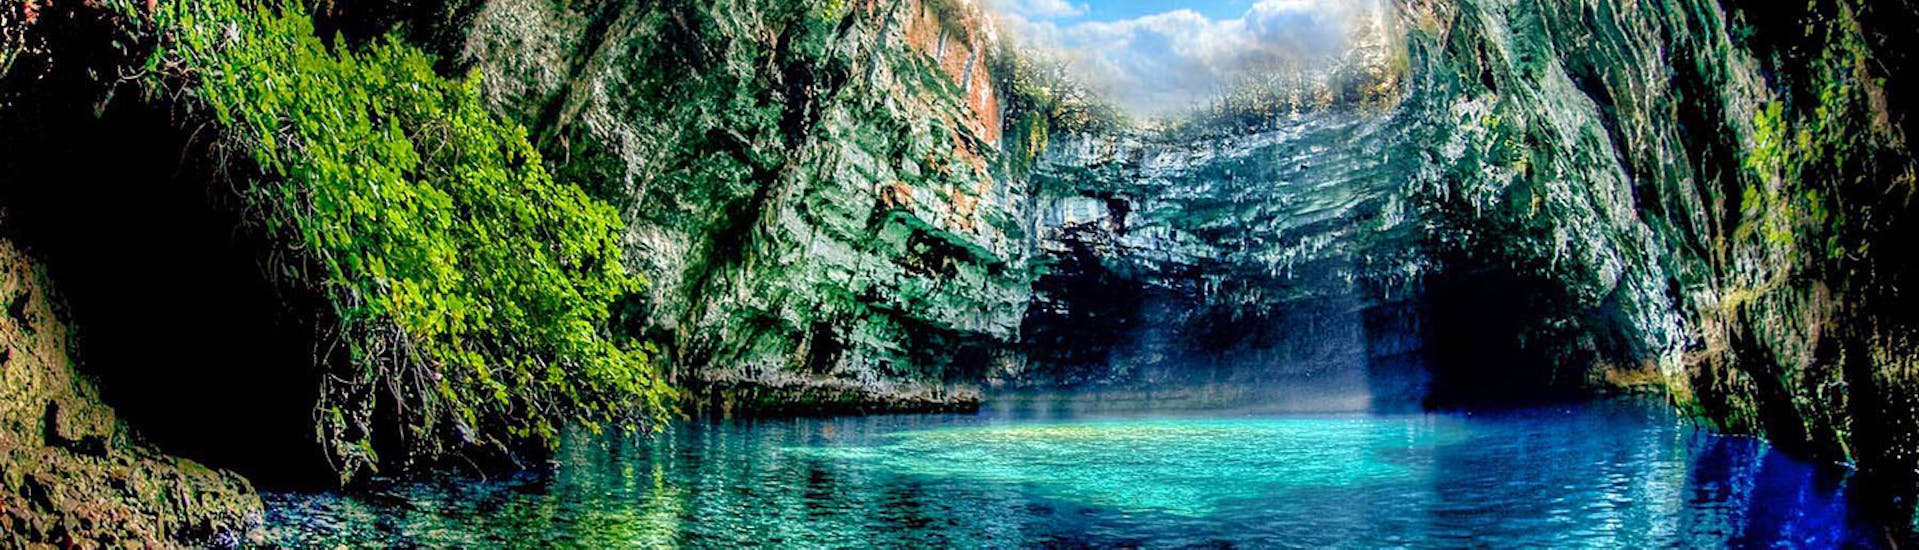 Die Melissani Höhle mit ihrem innenliegenden See und dem offenen Dach während der Bootstour & Bustour von Zakynthos nach Kefalonia mit Abba Tours Zante.